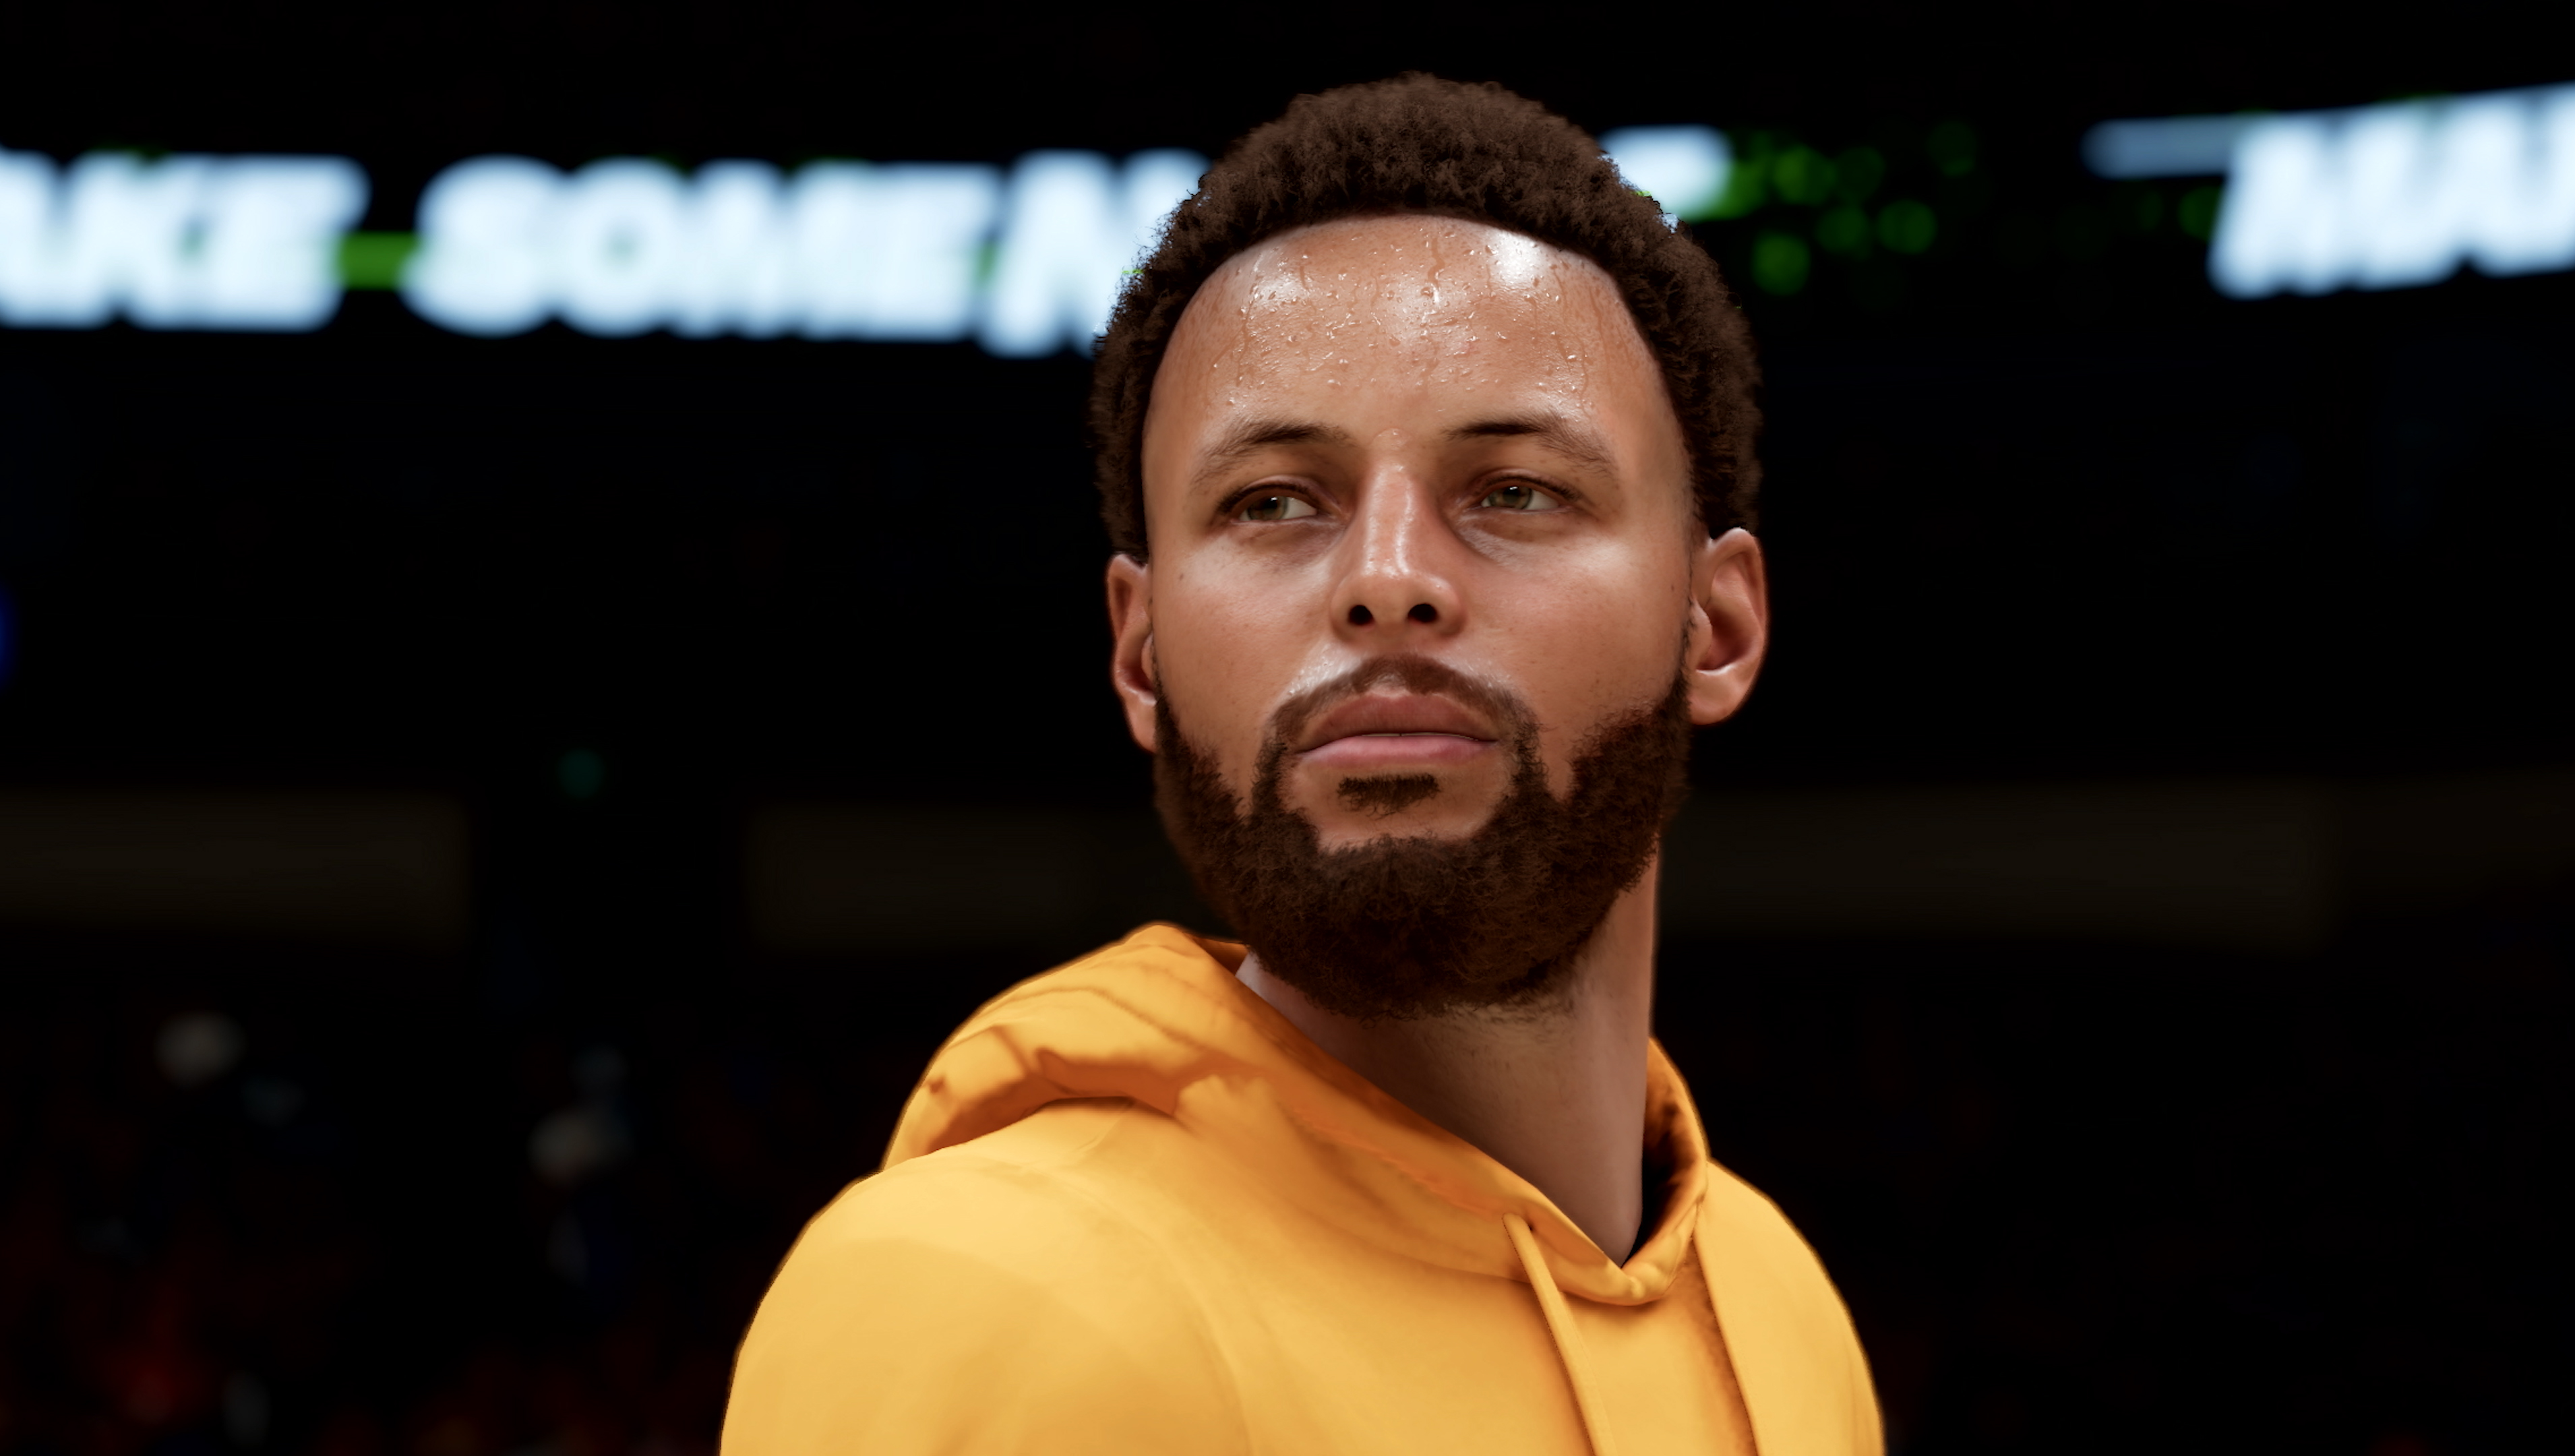 NBA 2K21 Next-Gen Gameplay Trailer Assets